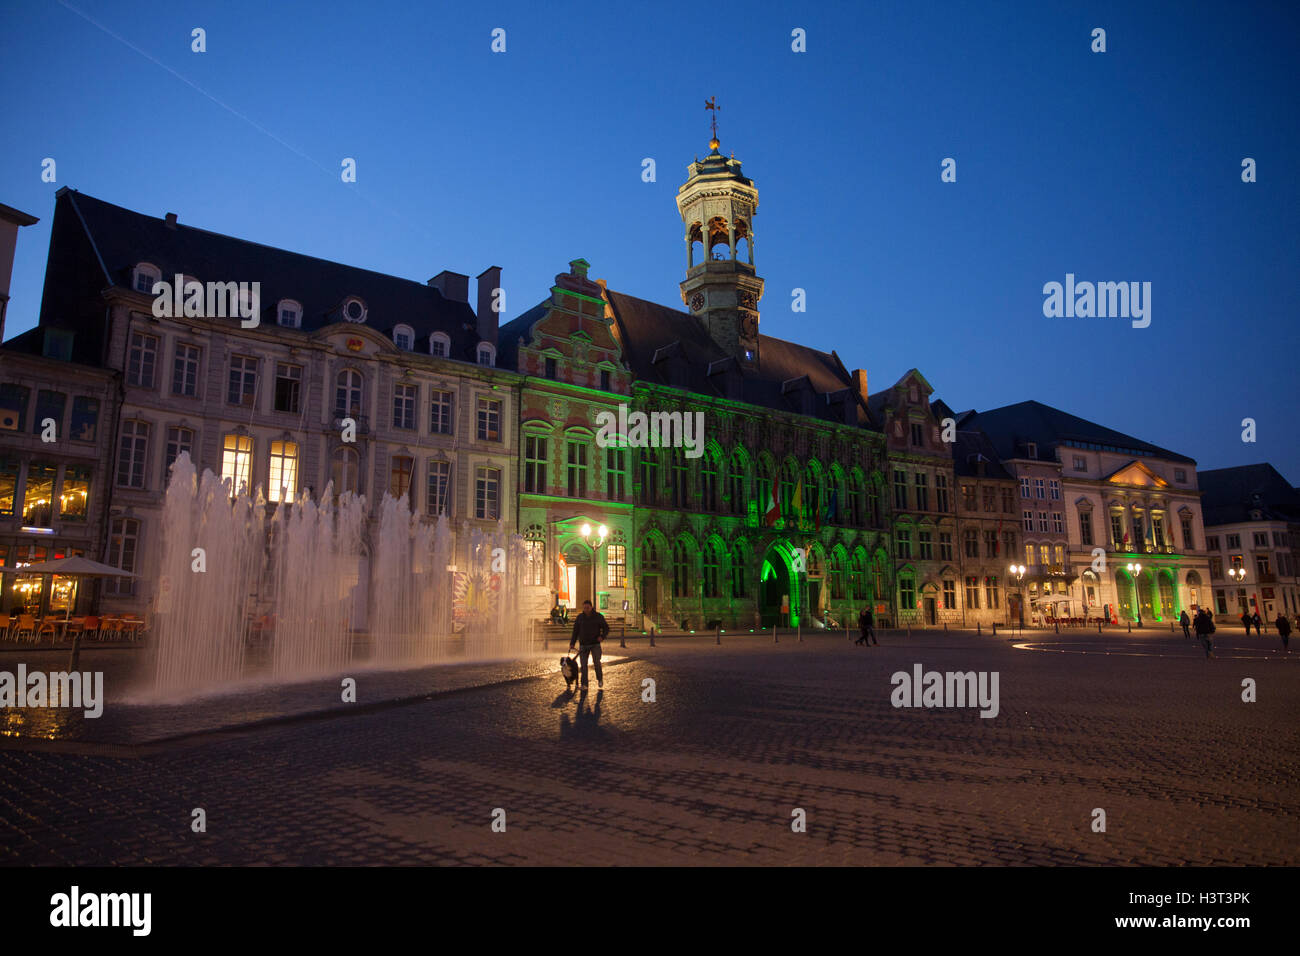 Der Grand Place, das Zentrum der historischen Stadt Mons. Mons ist eine belgische Stadt und Gemeinde und die Hauptstadt von der provi Stockfoto